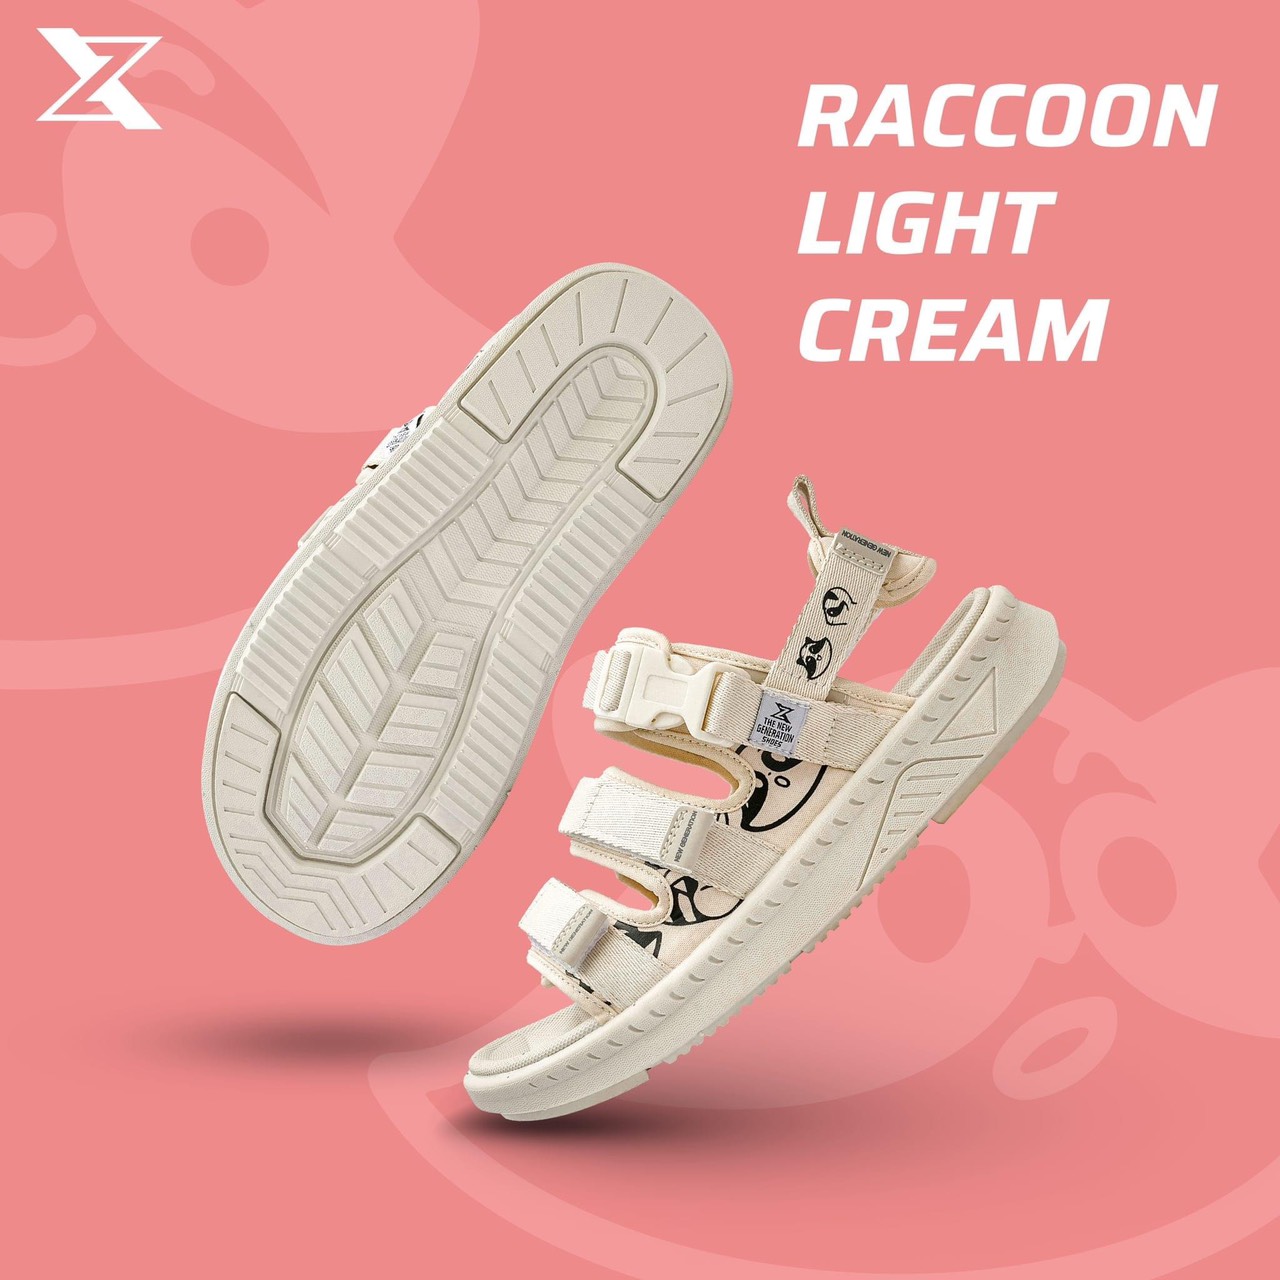 Giày Sandal Nữ ZX Bubble T Raccoon hình ảnh chú gấu mèo đáng yêu mang đến